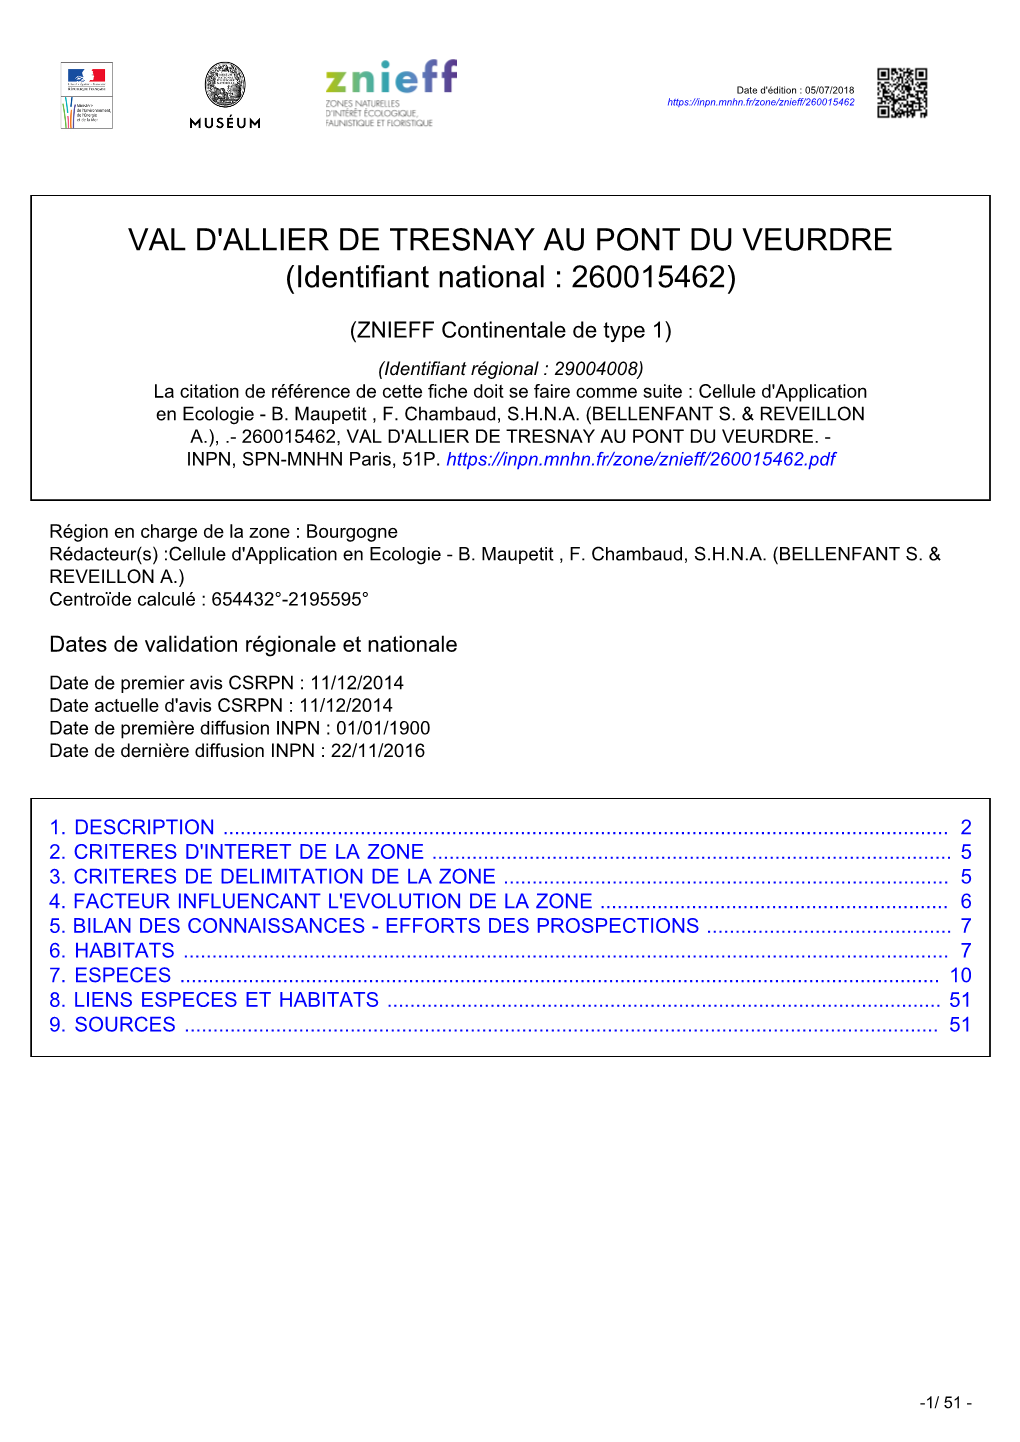 VAL D'allier DE TRESNAY AU PONT DU VEURDRE (Identifiant National : 260015462)